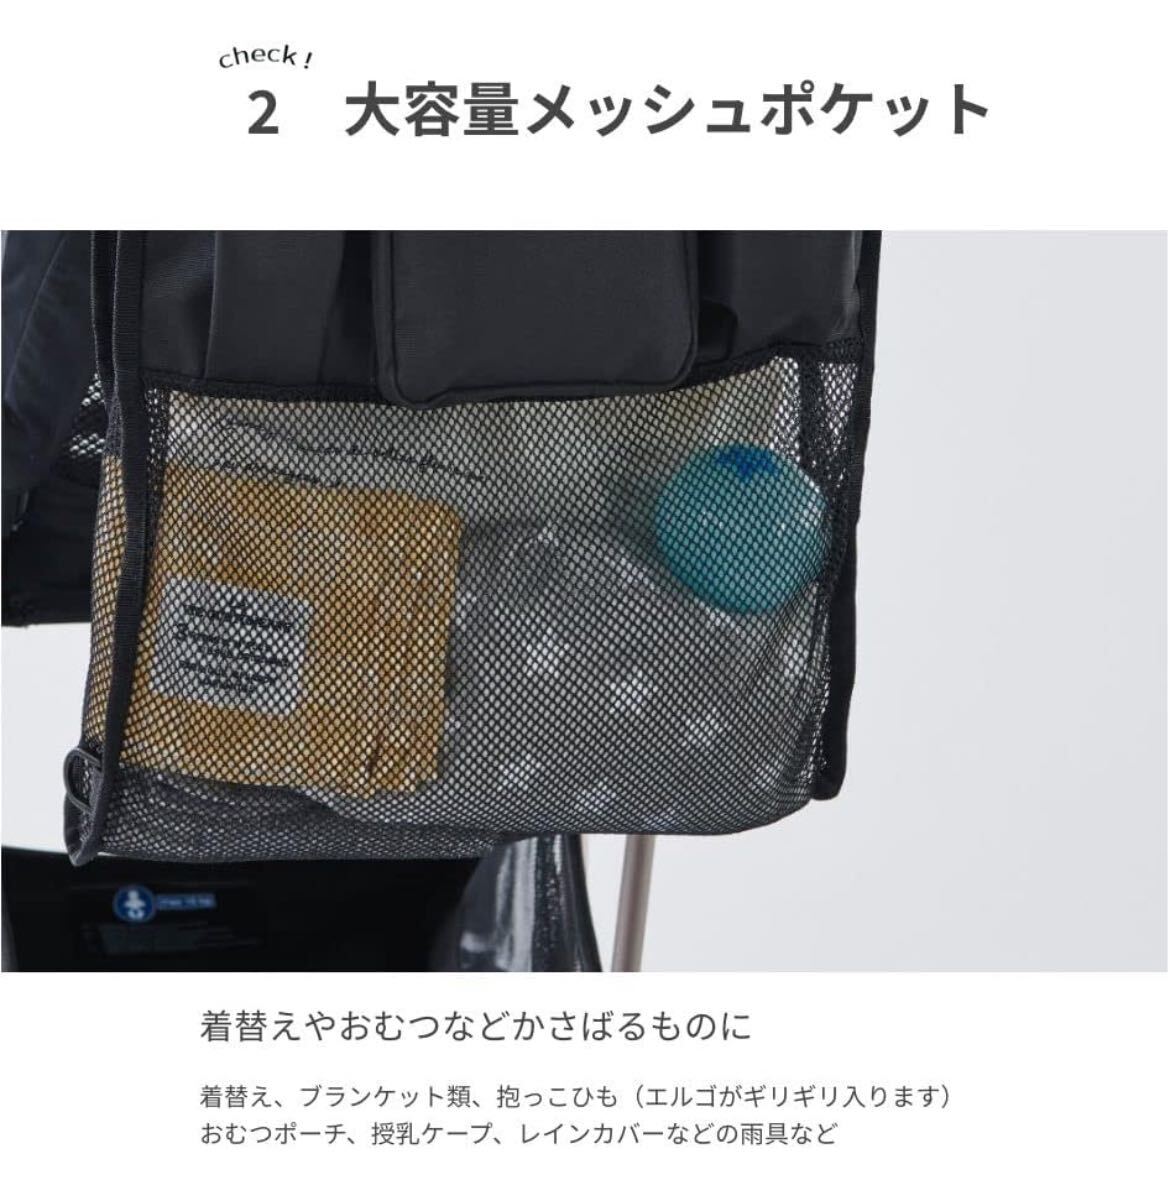 604p0839* balloona коляска для сумка . поэтому . сетка большая вместимость термос держатель для напитков коляска сумка модный 